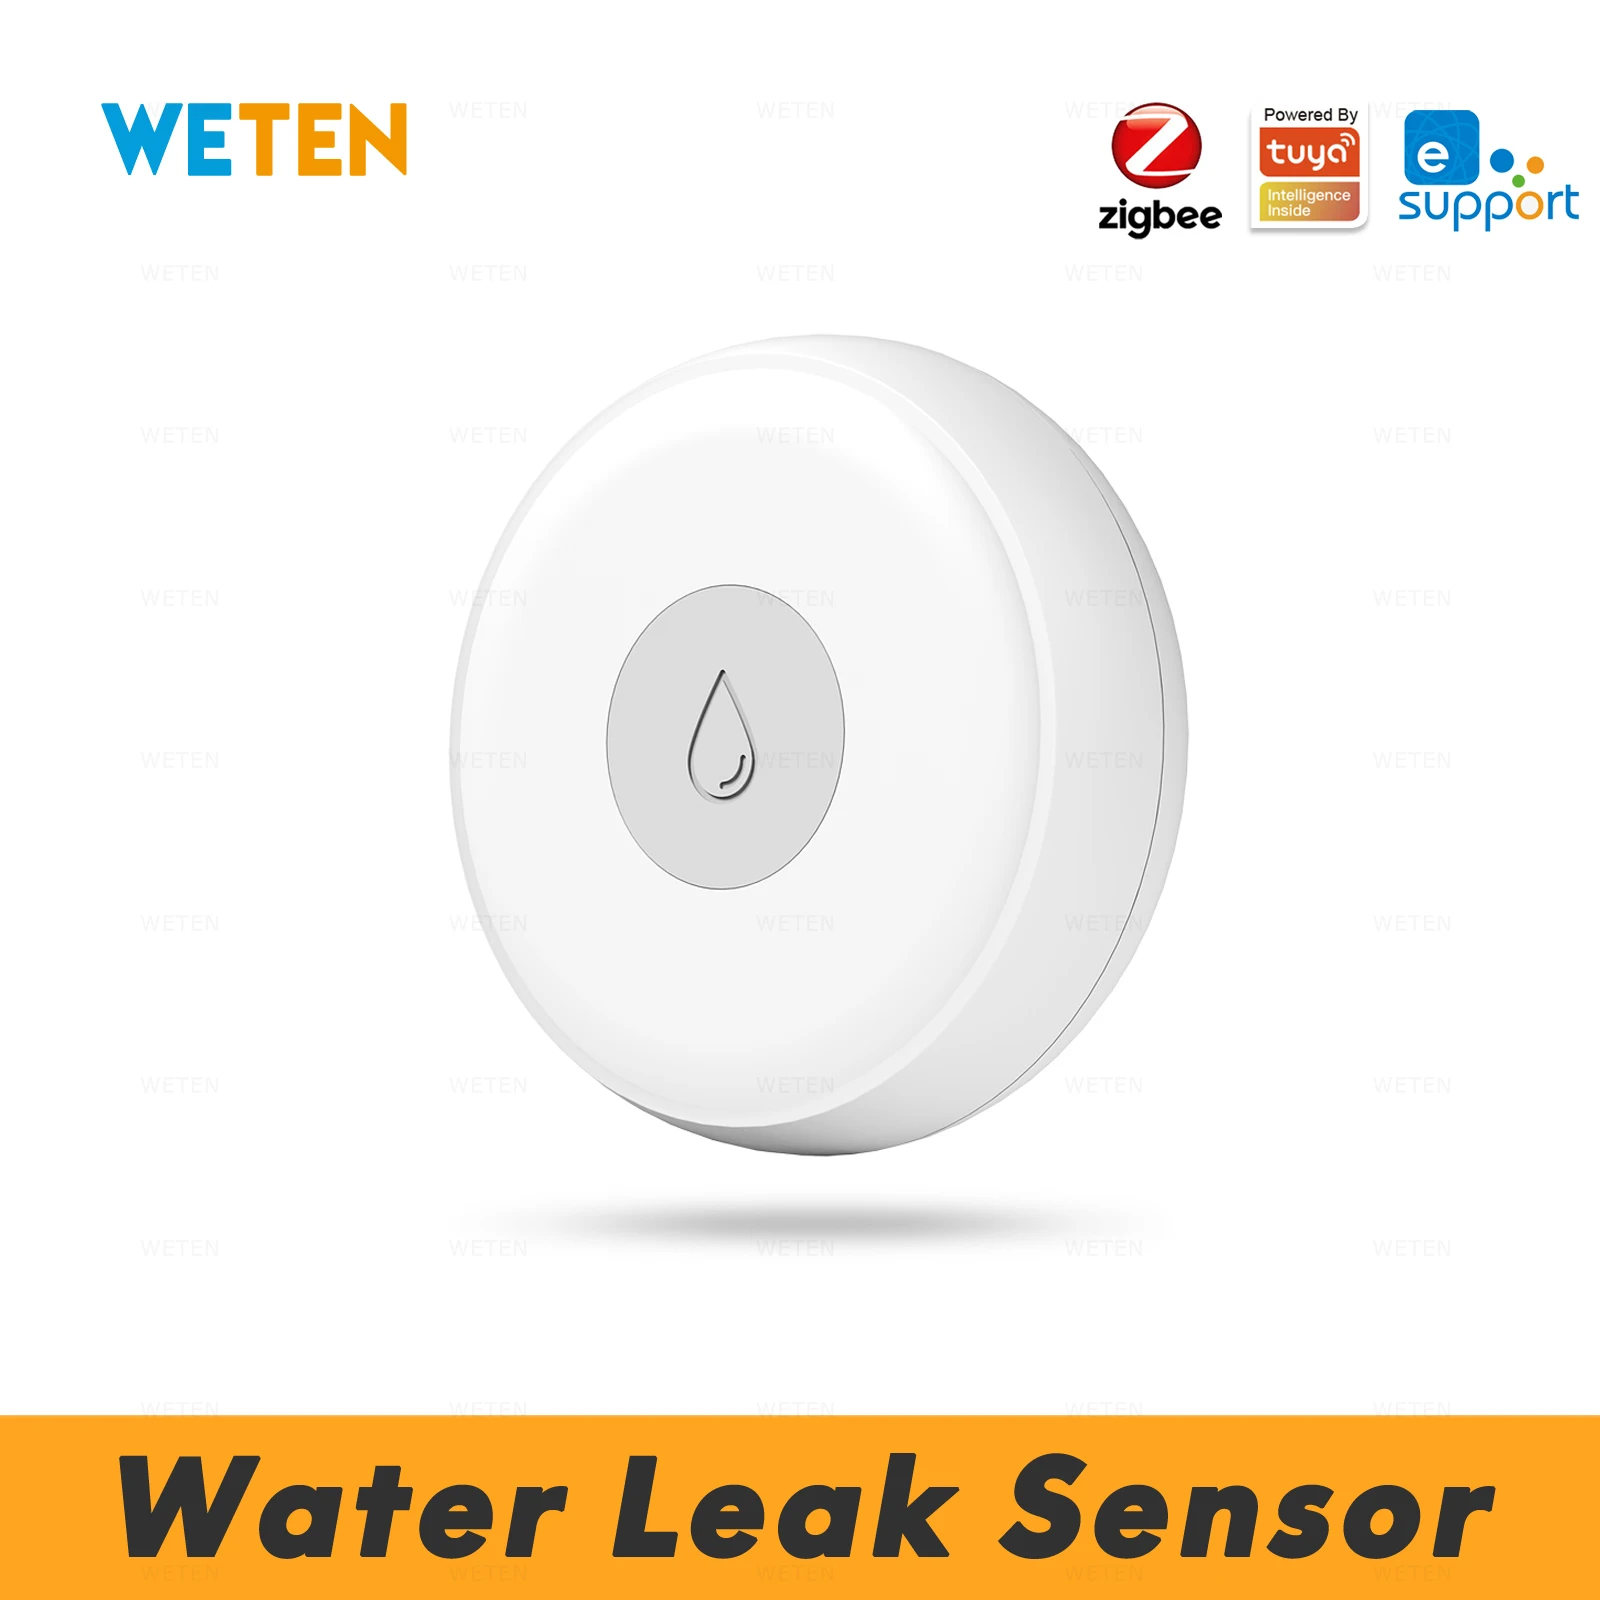 

eWeLink Tuya Zigbee Water Leak Sensor Alarm Detector, Work with Tuya Hub Sonoff Zigbee Bridge, Home Assistant via Zigbee2mqtt